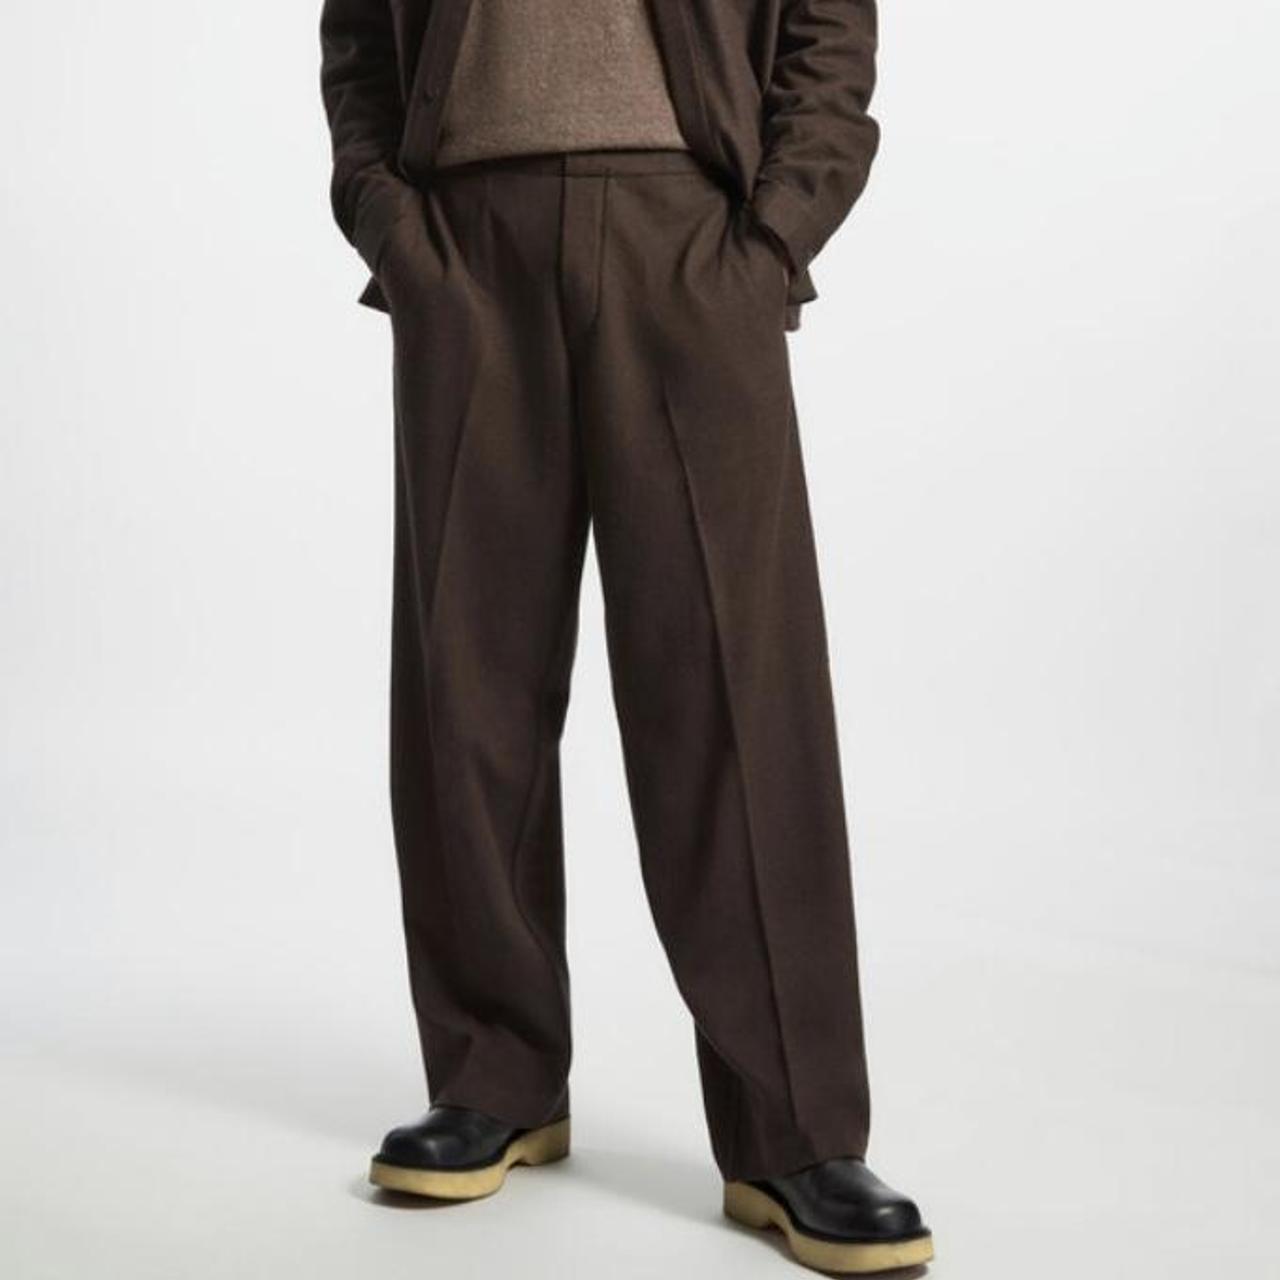 COS men’s brown wool regular fit elasticated pants -... - Depop